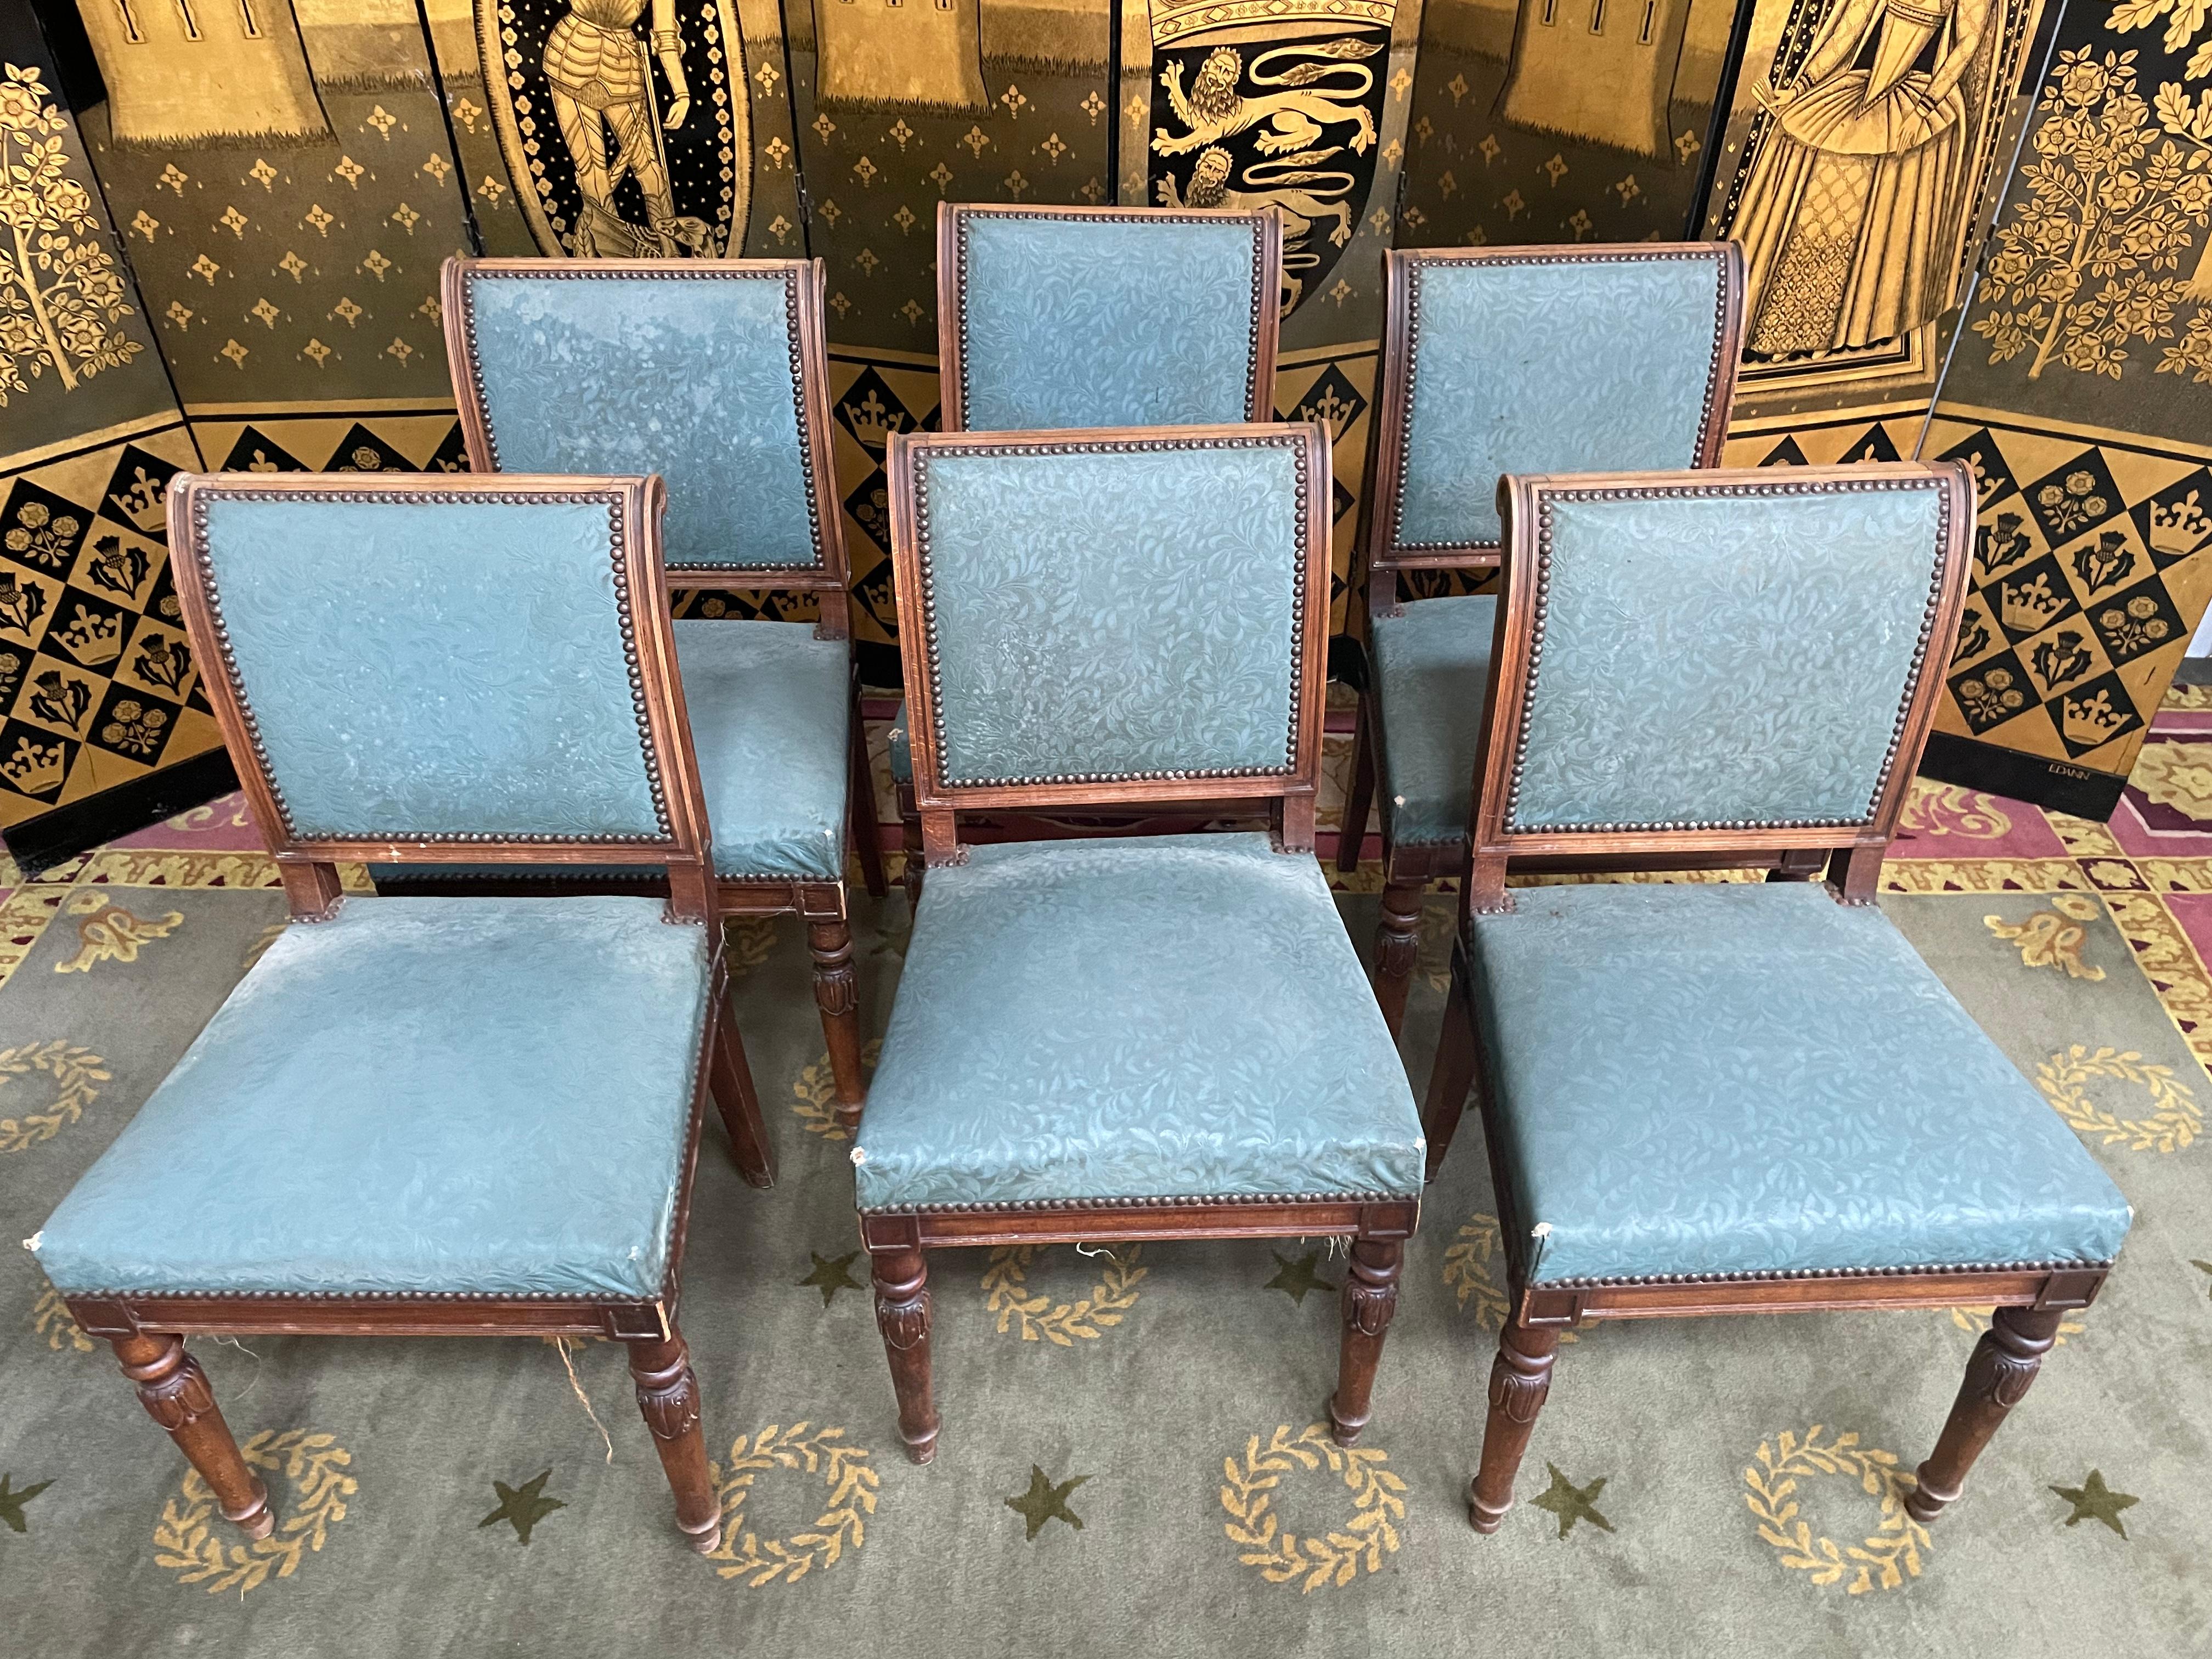 Suite de 6 chaises de style Louis XVI avec dossiers à enroulement de belle qualité. 
 
Entièrement à restaurer. 
 
Vous souhaitez choisir votre tissu et nous le faire parvenir pour que nous effectuons la réfection pour vous?